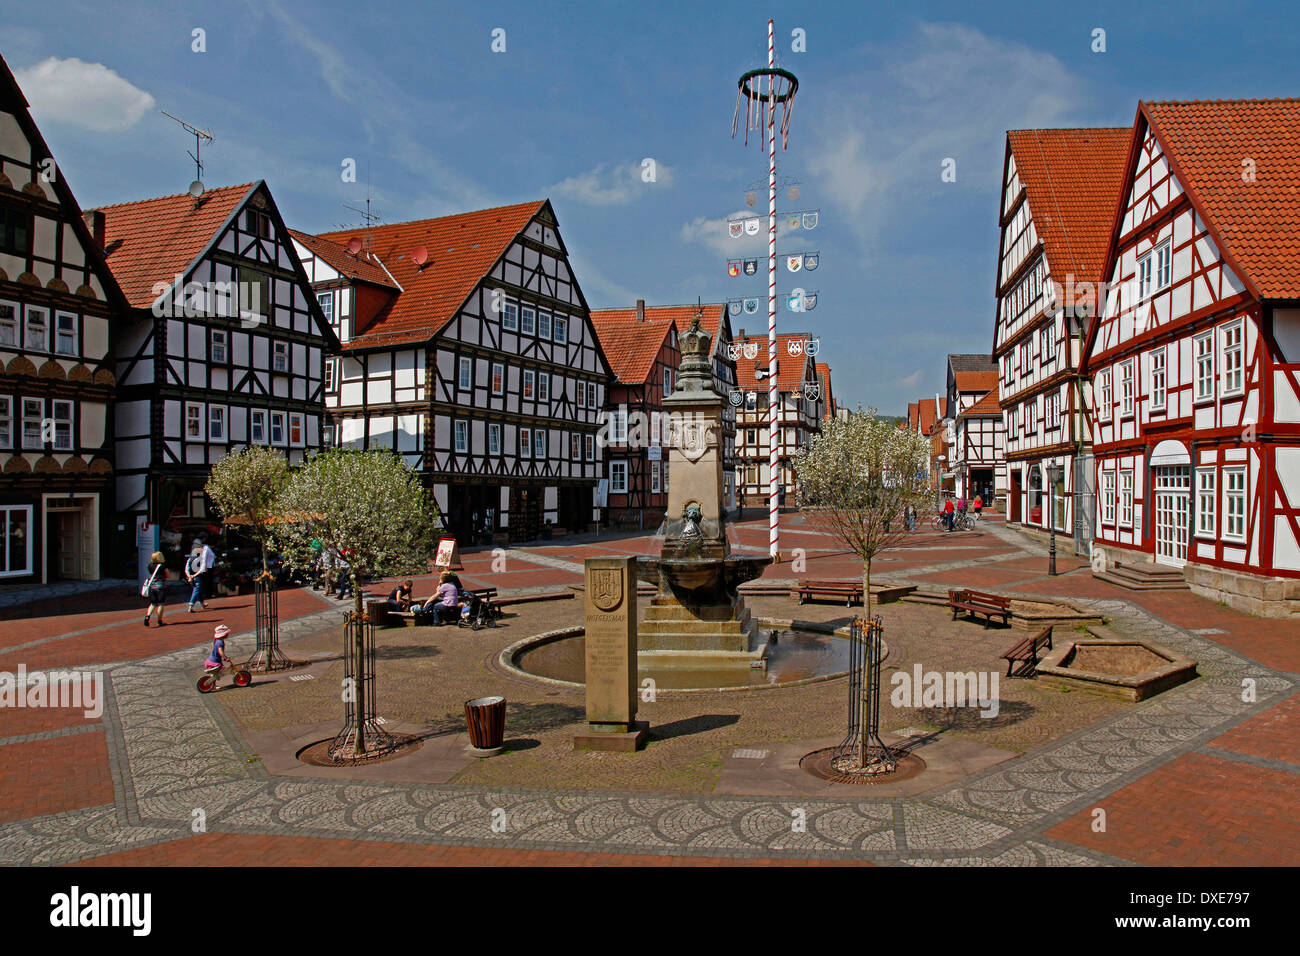 Place du marché, fontaine du marché, Maypole, Warburg, district de Kassel, Hesse, Allemagne Banque D'Images